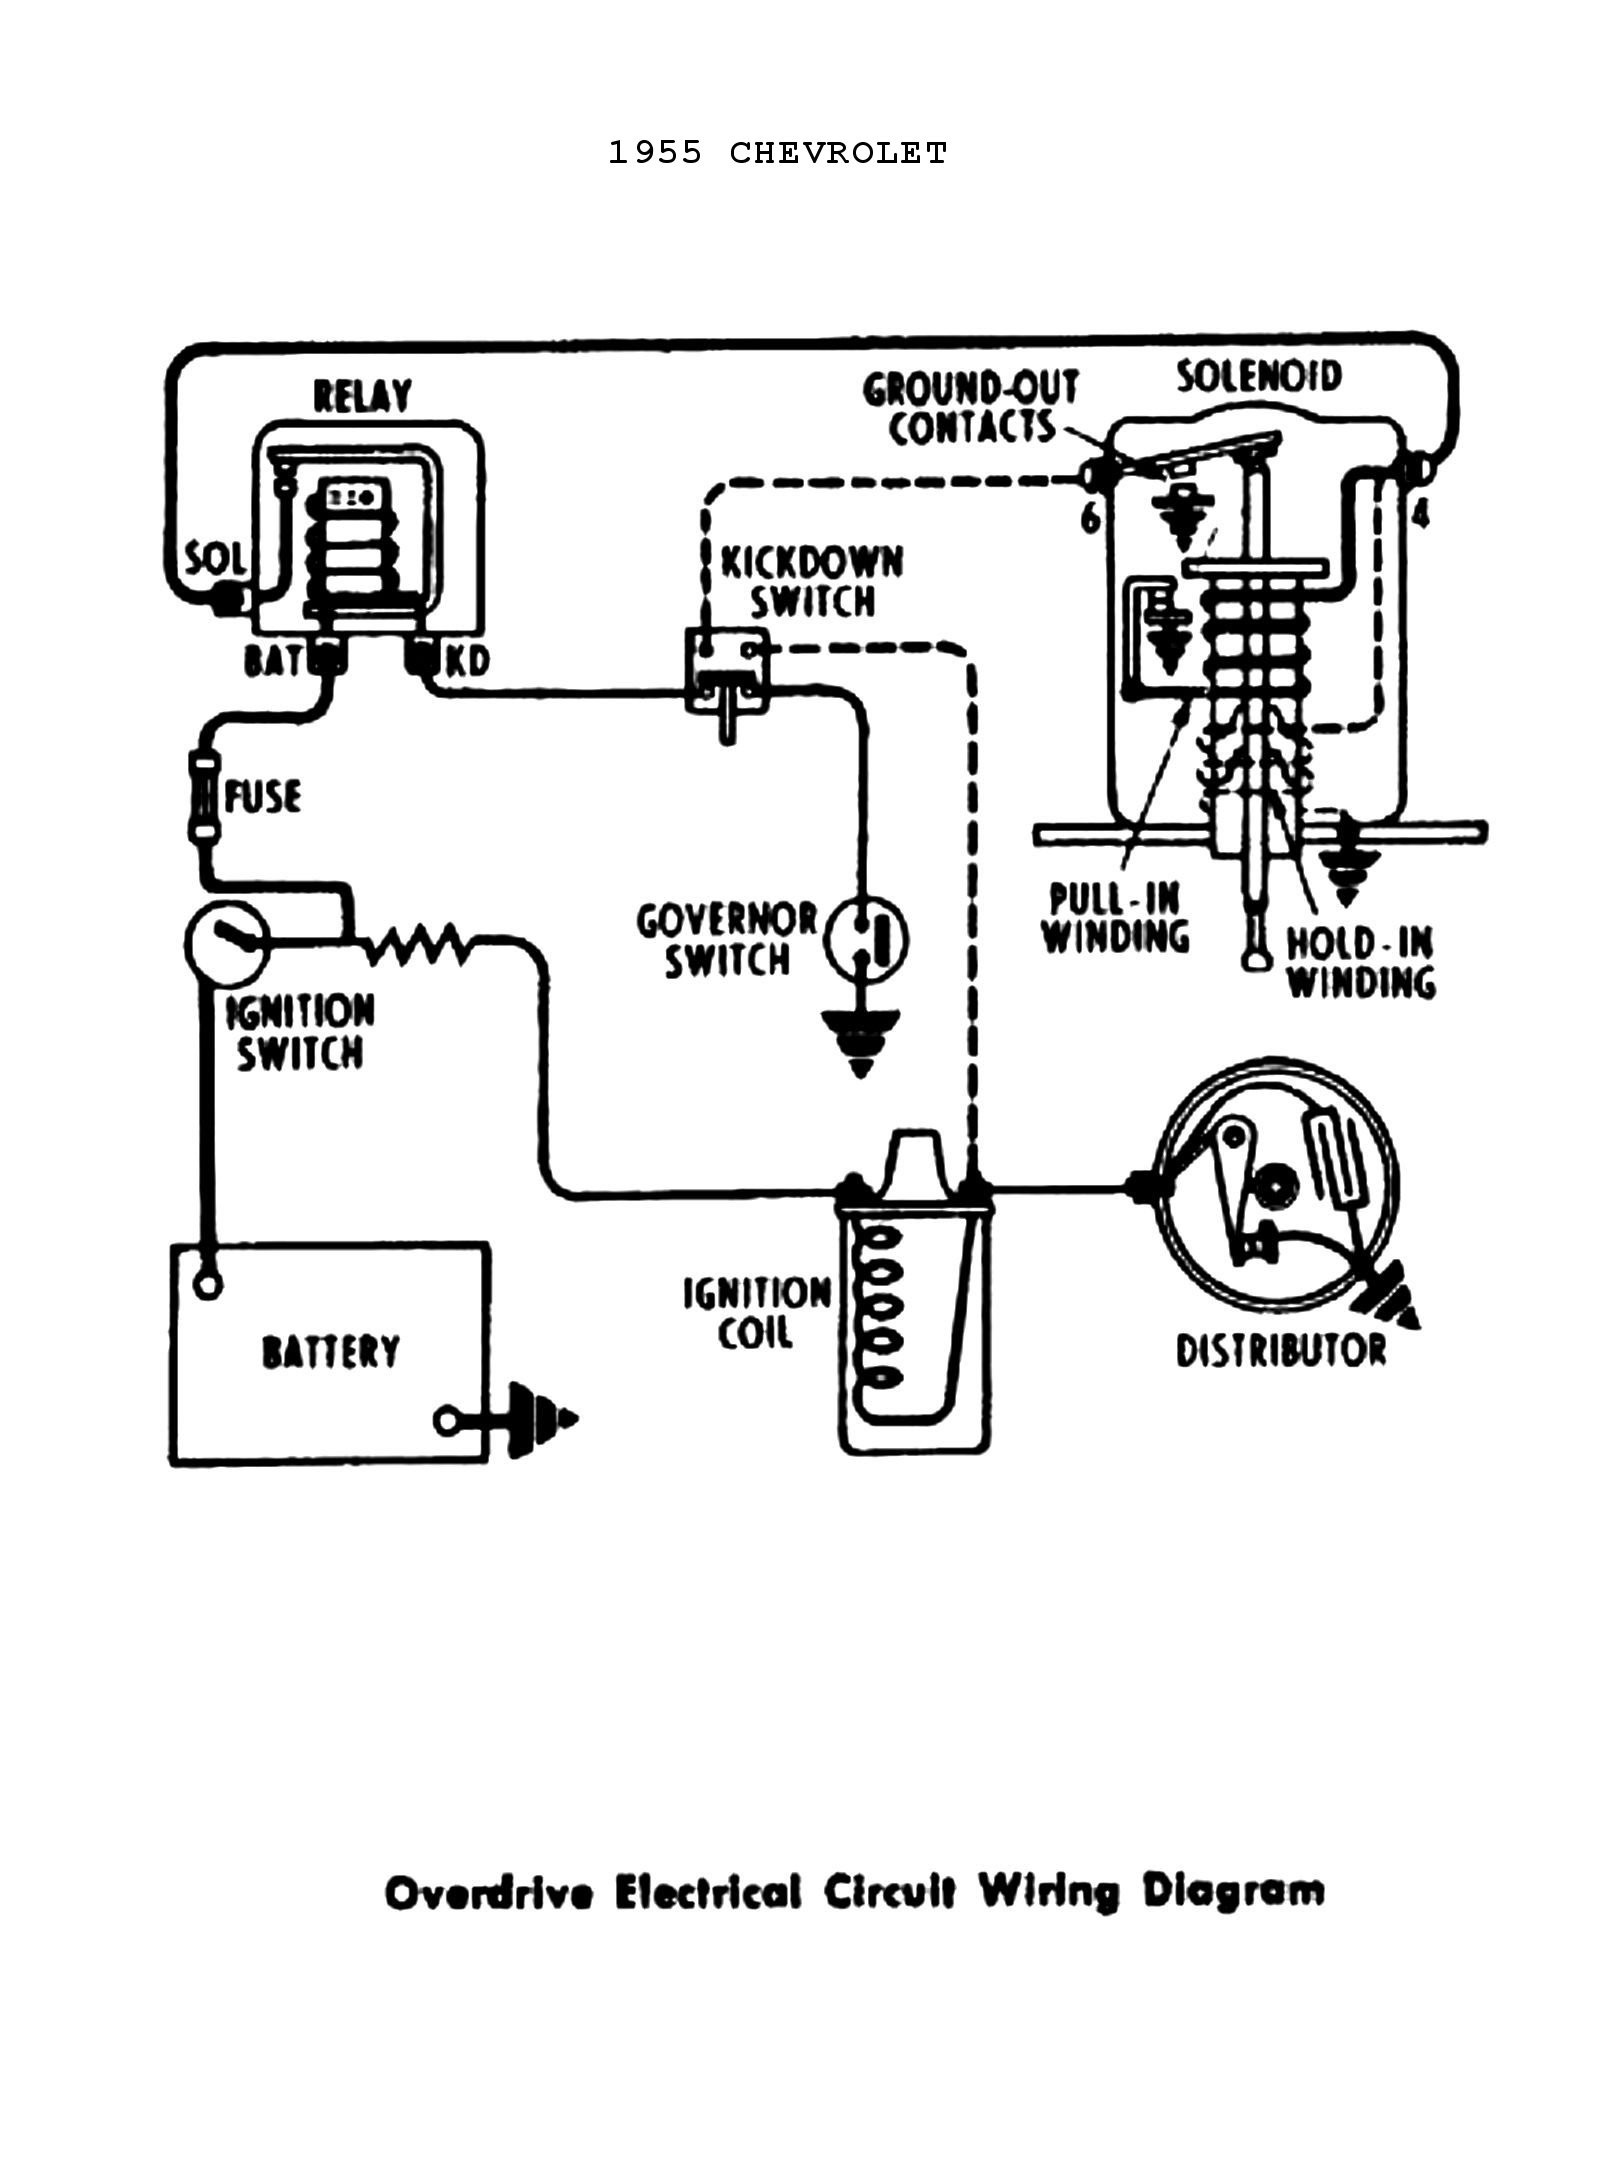 98 Chevy Blazer Engine Diagram S10 Ignition Wiring Diagram Simple Guide About Wiring Diagram Of 98 Chevy Blazer Engine Diagram